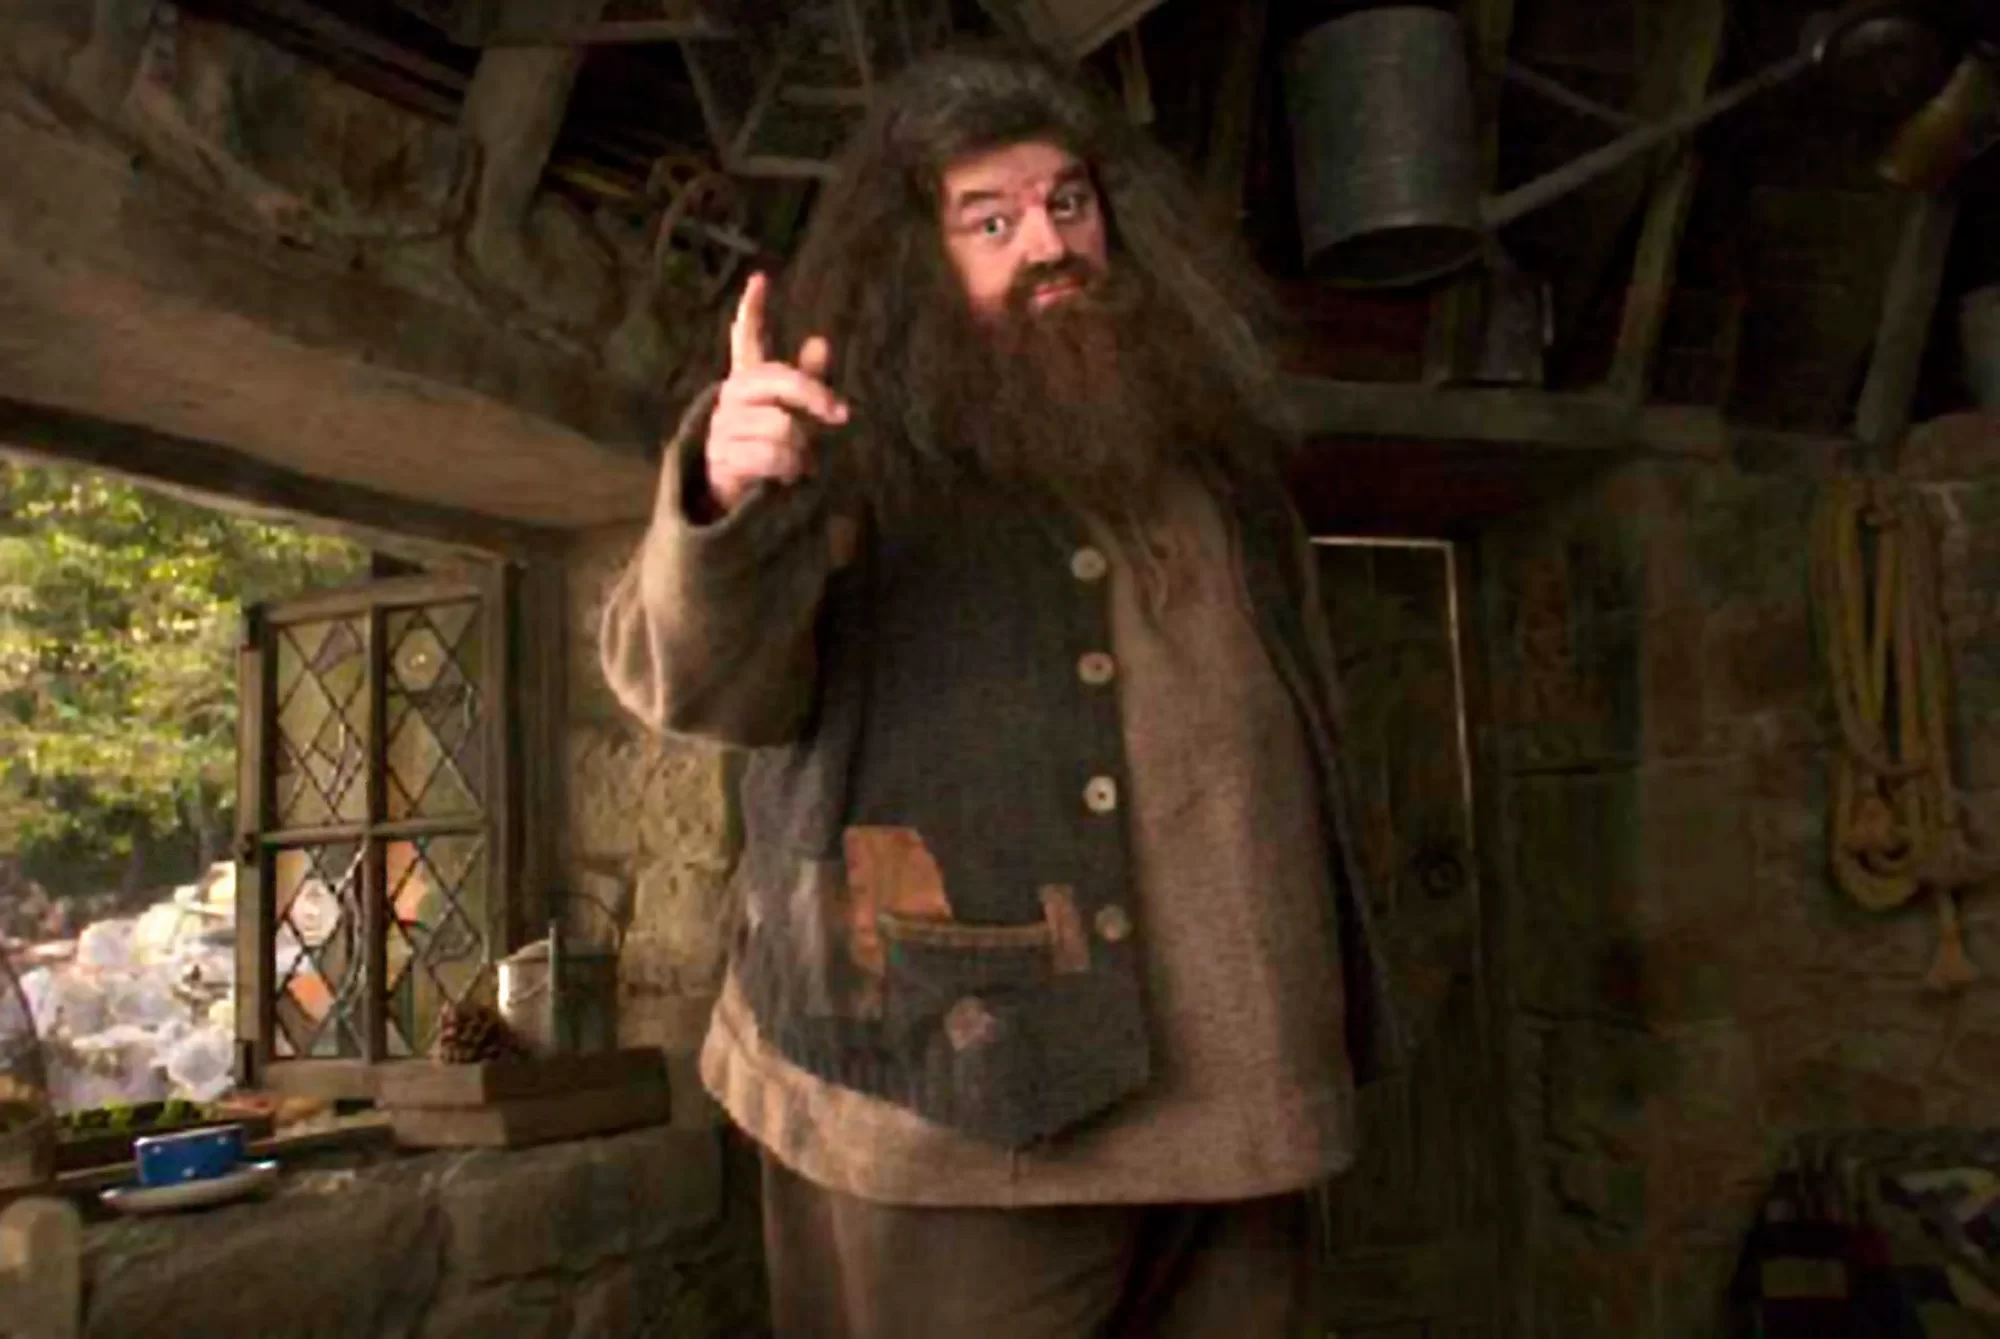 هاري بوتر "Harry Potter" يفقد أبرز شخصياته في ظروف غامضة.. ماذا حدث لـ"هاجريد"؟ watanserb.com